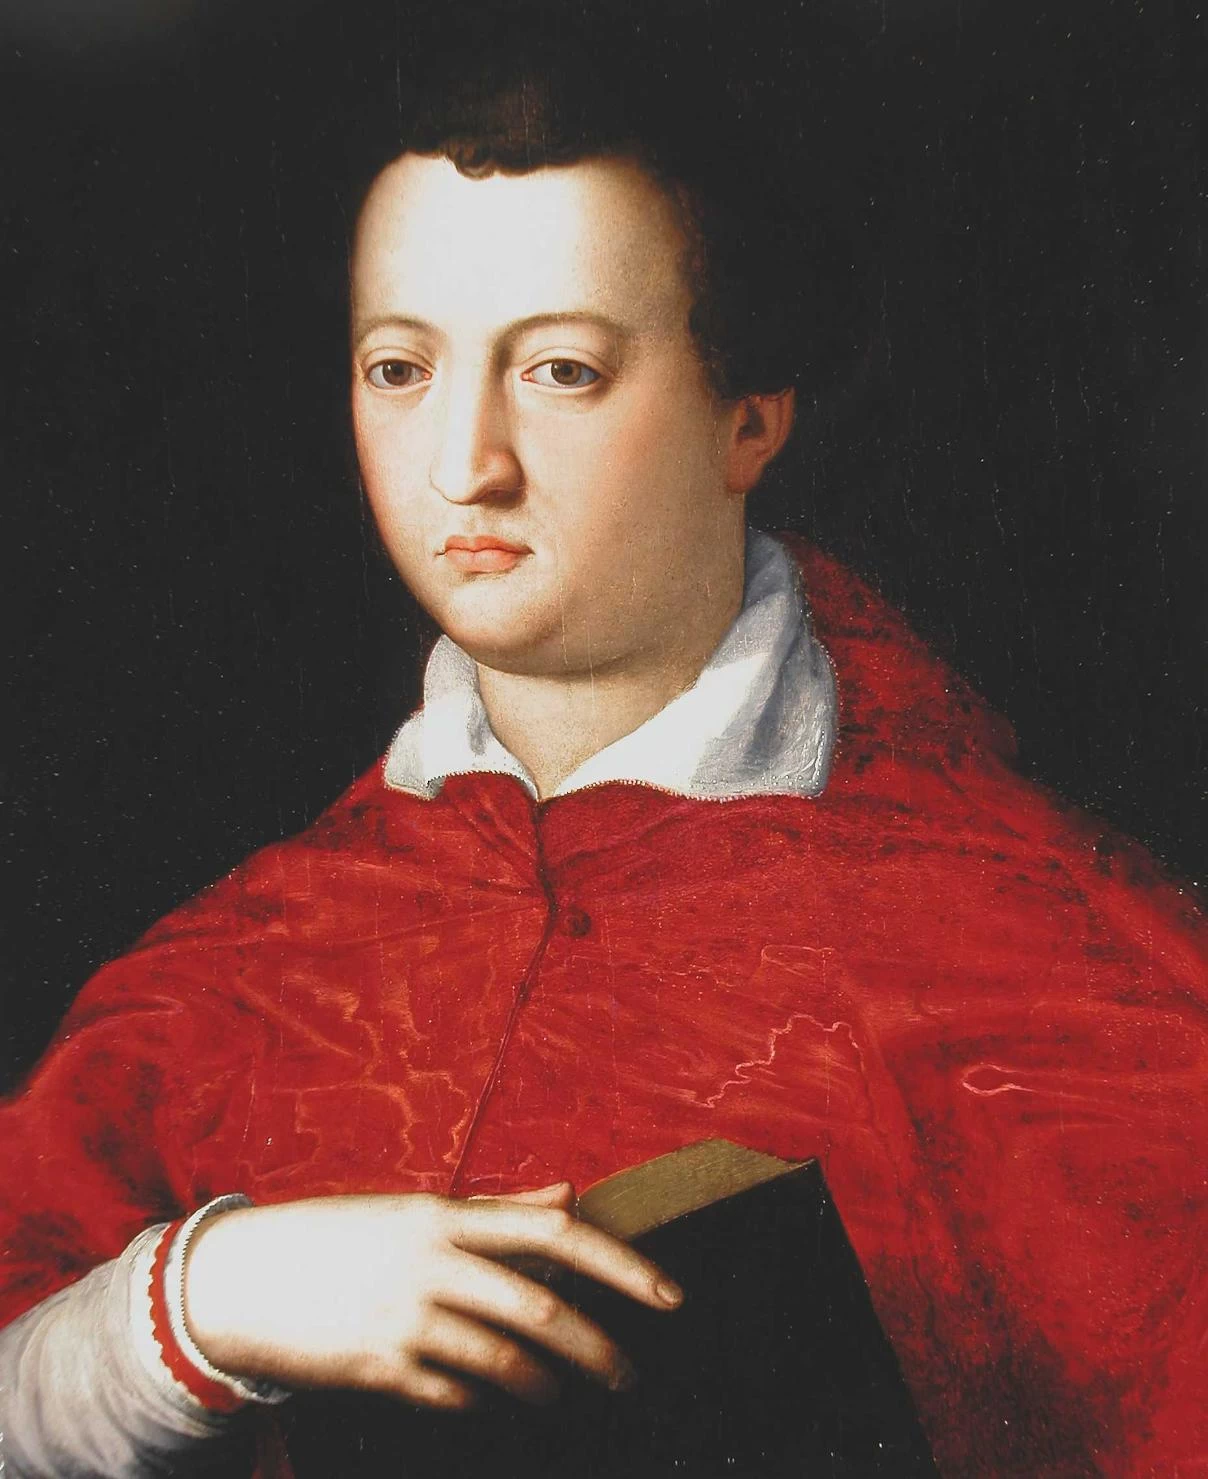  184-Agnolo Bronzino-Ritratto del cardinale Giovanni dei Medici arcivescovo di Pisa -Pisa 